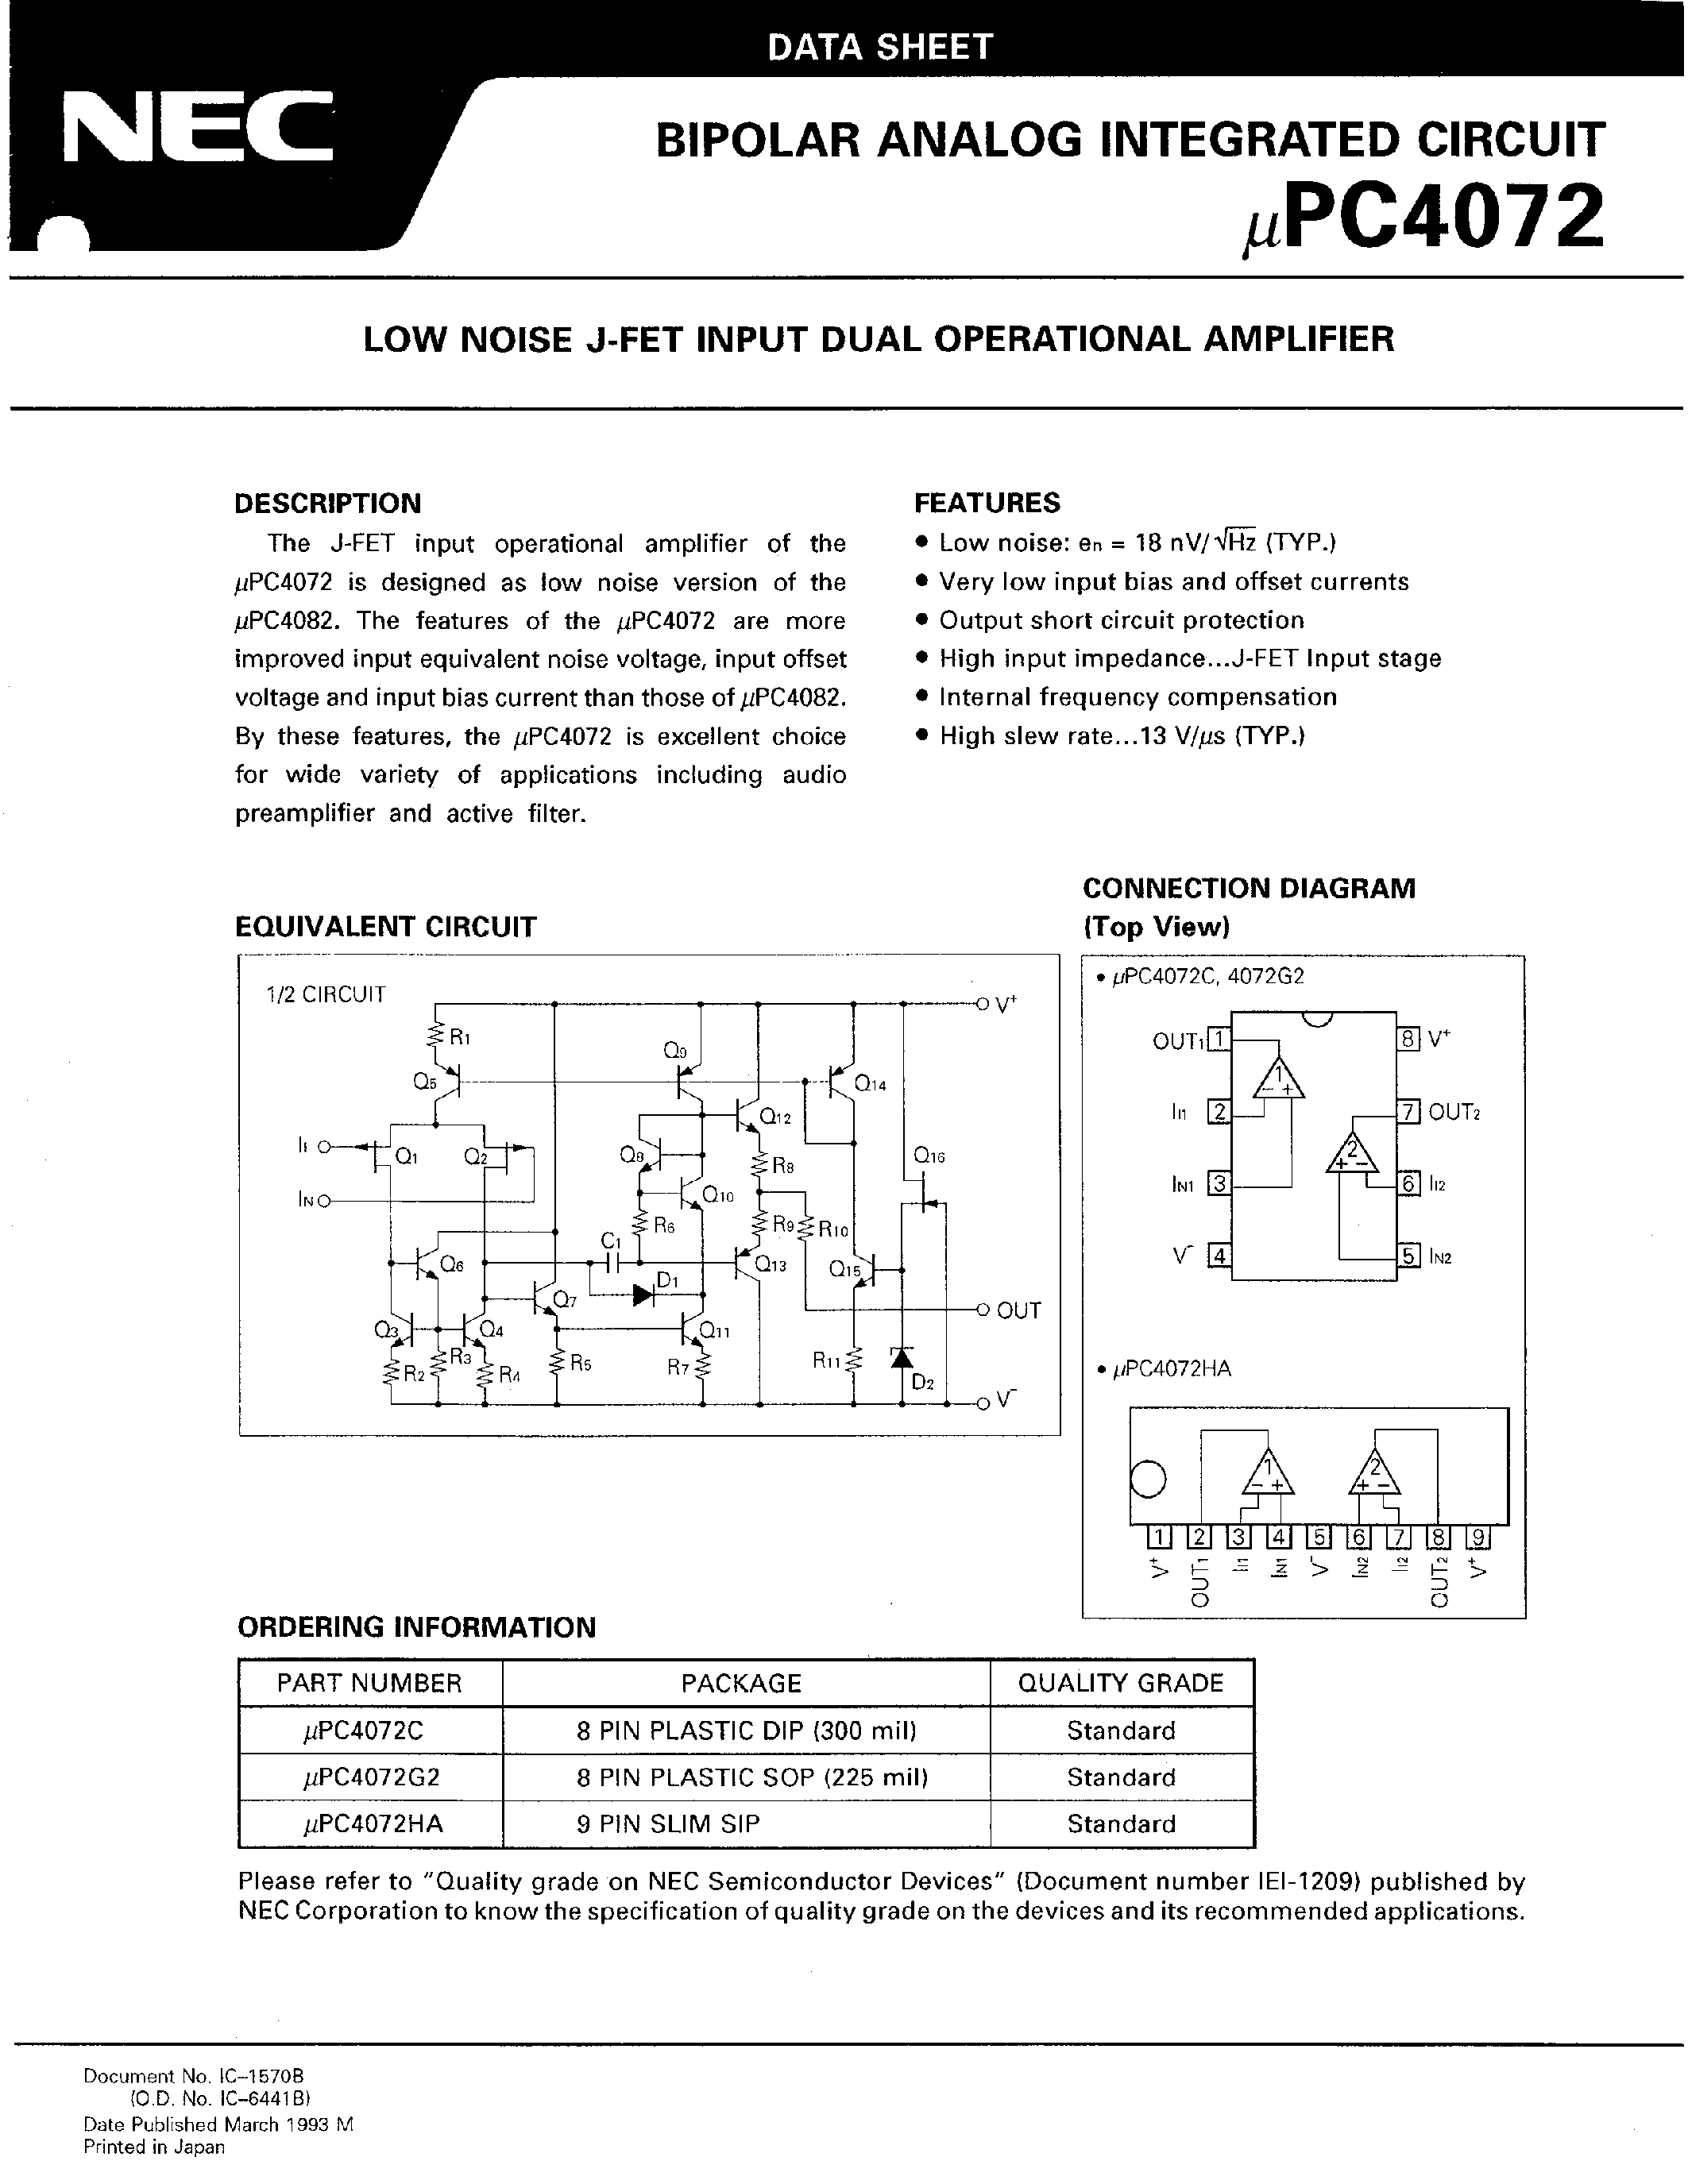 Даташит UPC4072HA - LOW NOISE J-FET INPUT DUAL OPERATIONAL AMPLIFIER страница 1